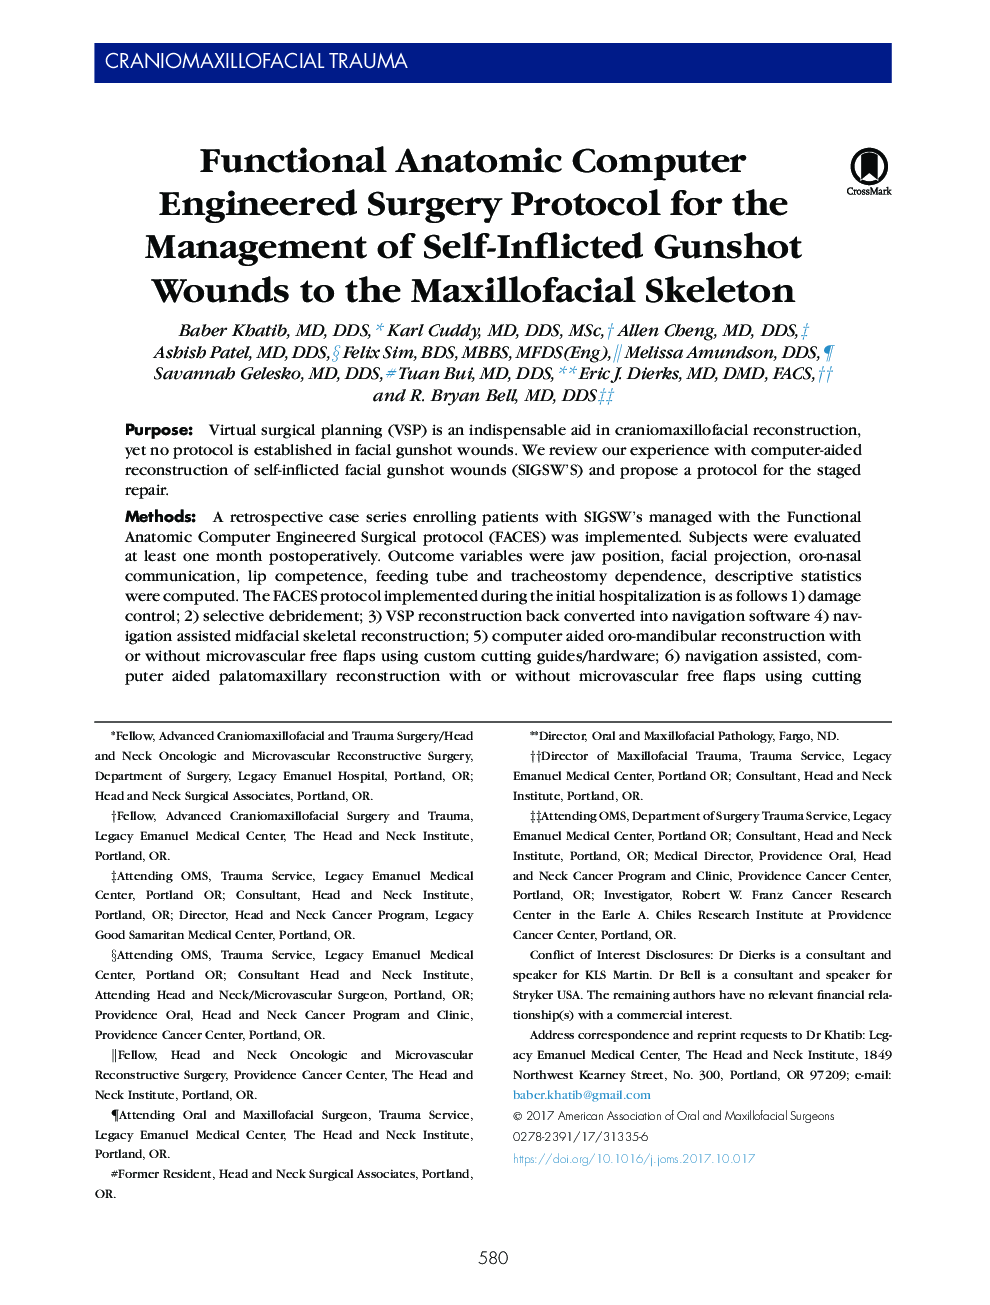 پروتکل جراحی مهندسی آناتومیک کارکردی برای مدیریت زخمهای گلوله ای خود به اسکلت فکی 